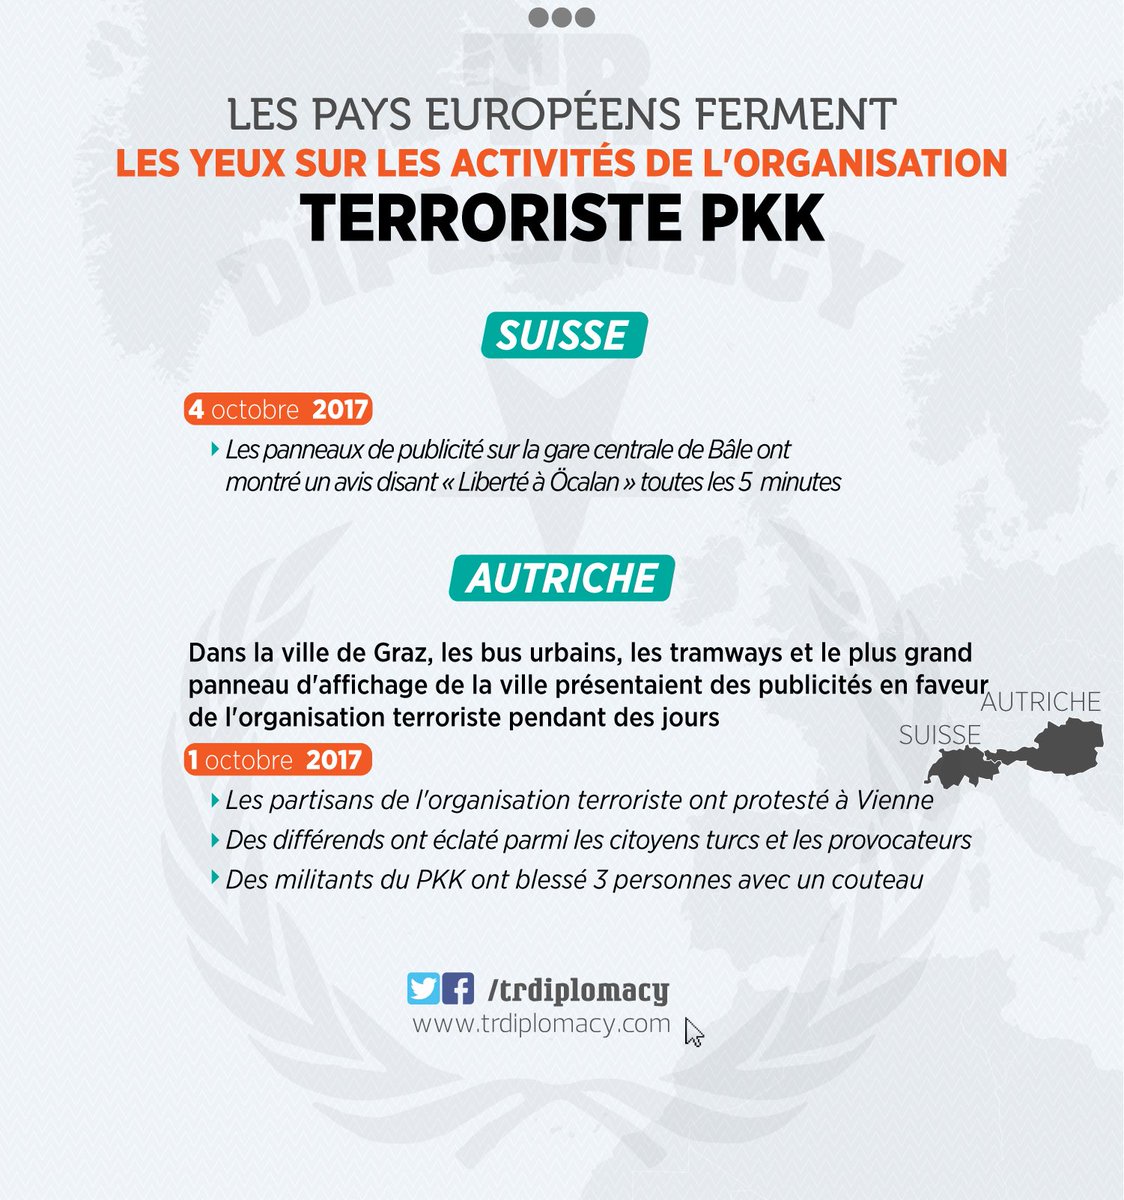 Les pays européens tolèrent les les activités provocatrices de l’organisation terroriste PKK